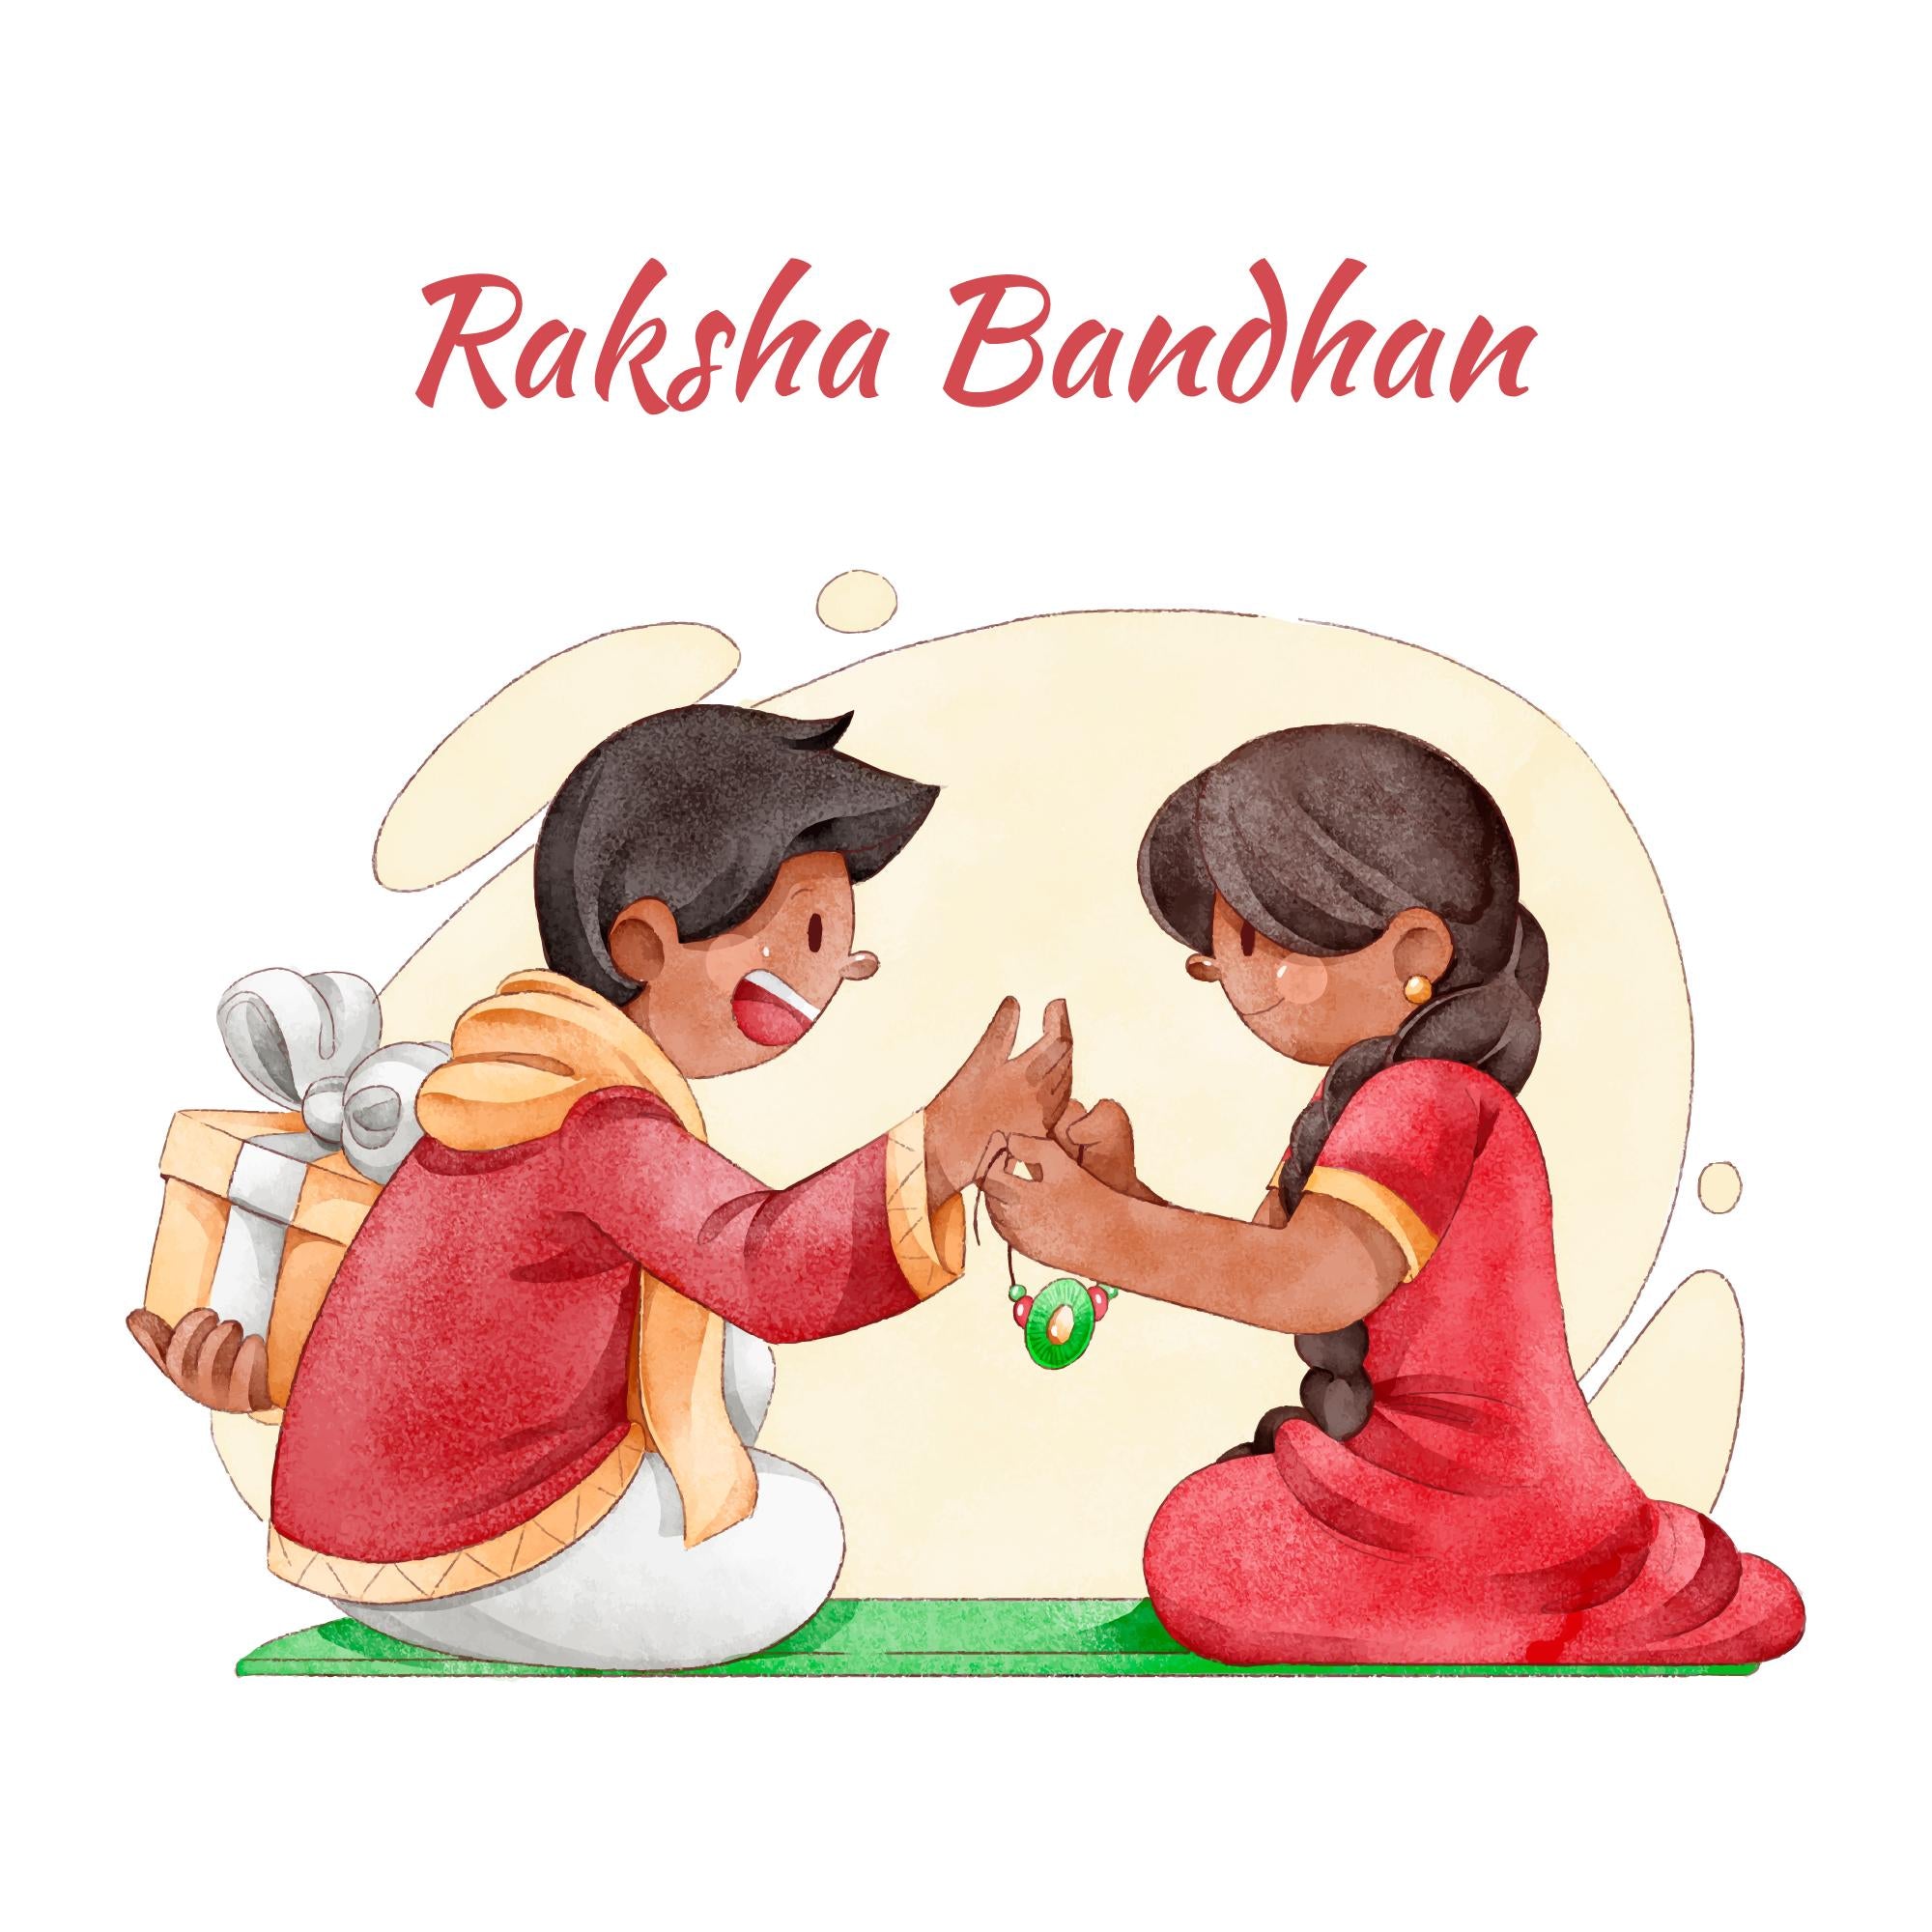 How did you celebrate this Raksha Bandhan in COVID? - Quora